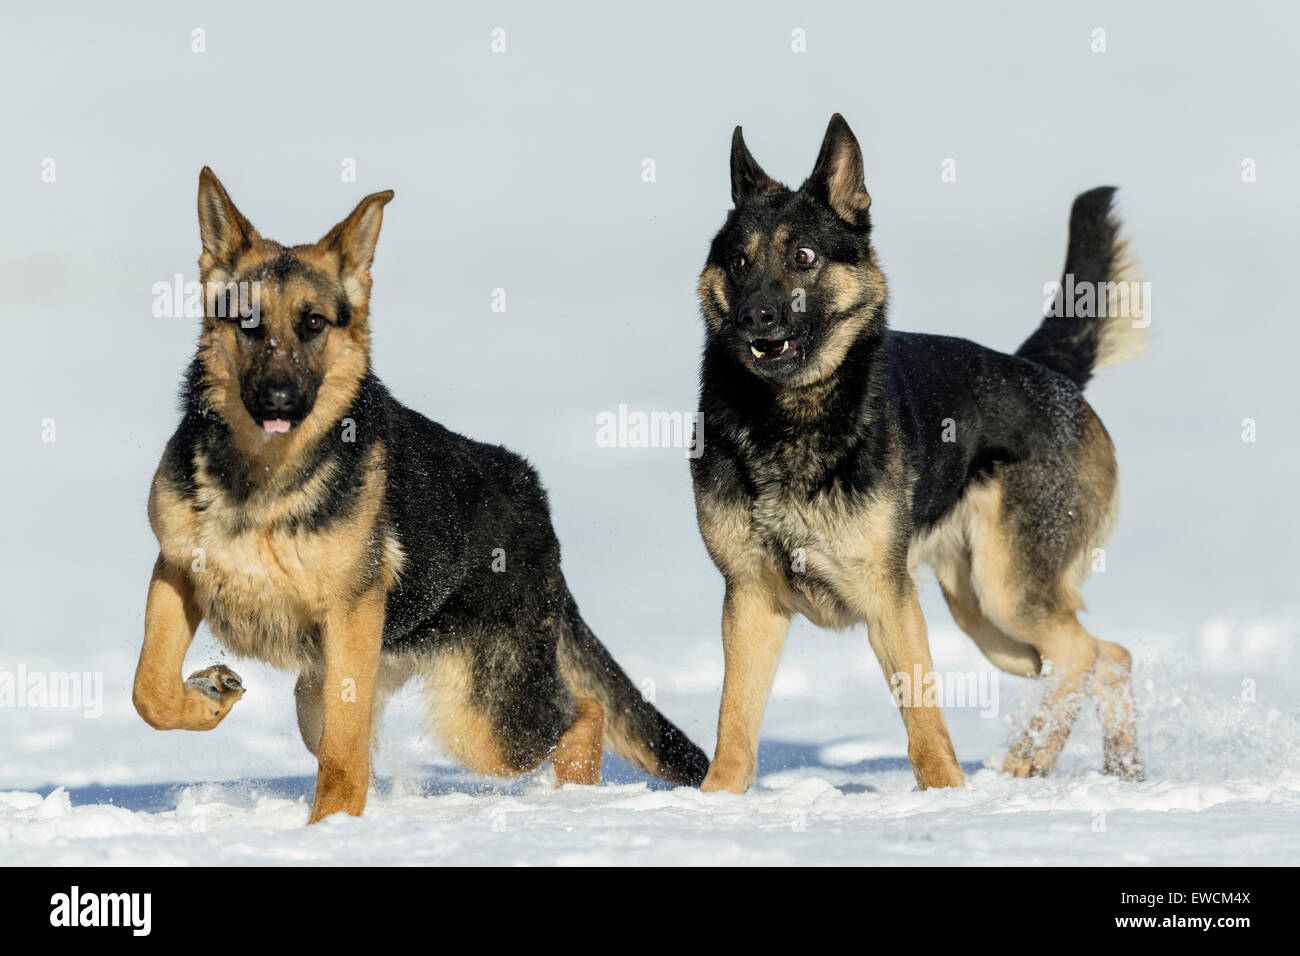 Berger allemand, l'alsacien. Deux adultes jouant sur la neige. Allemagne Banque D'Images